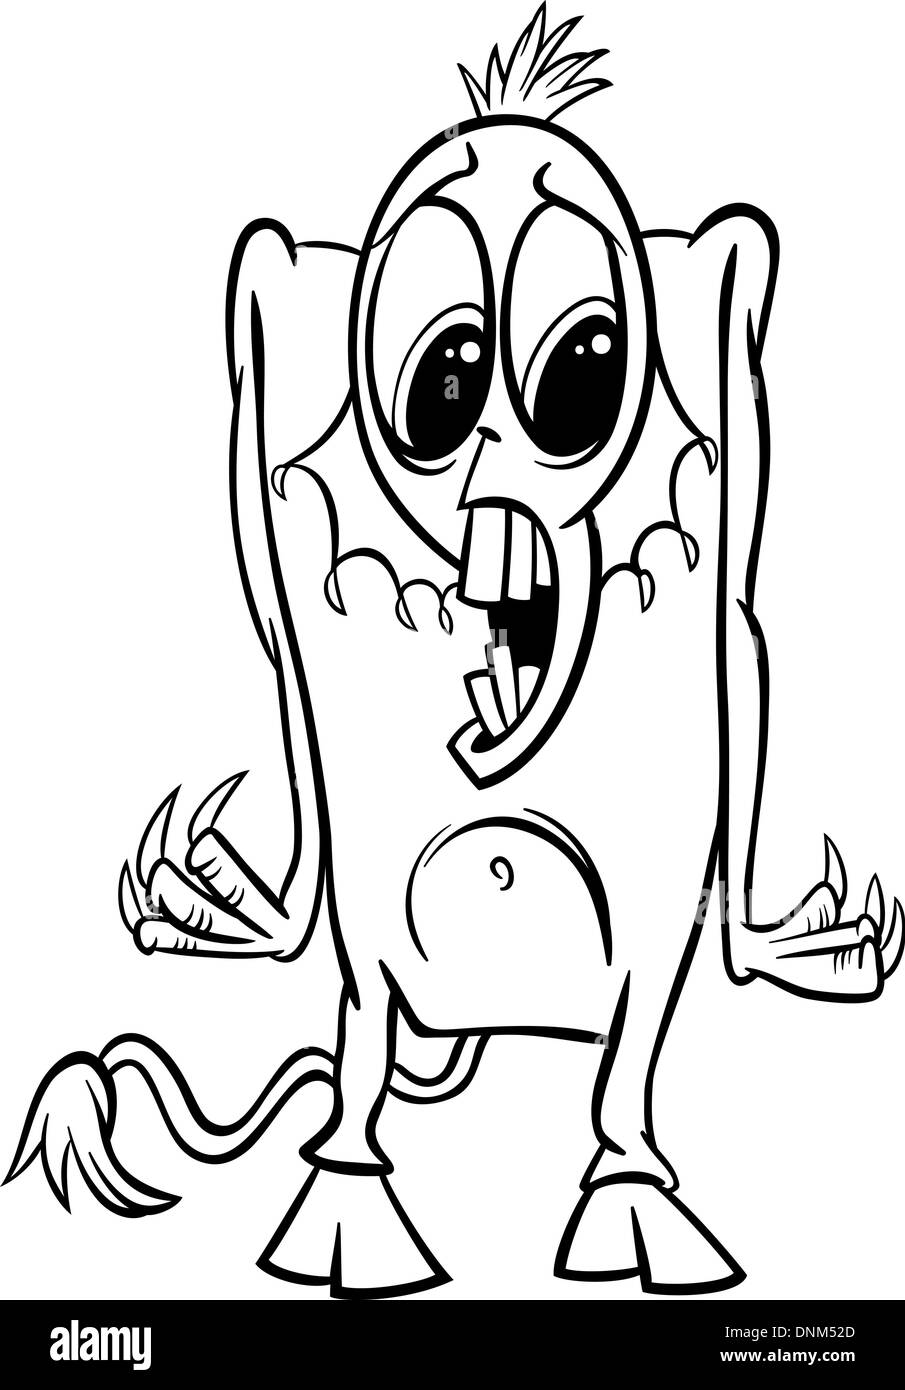 Schwarz / Weiß Cartoon Illustration der lustige Monster oder Schreck oder Drehgestell für Kinder zum Ausmalen Stock Vektor